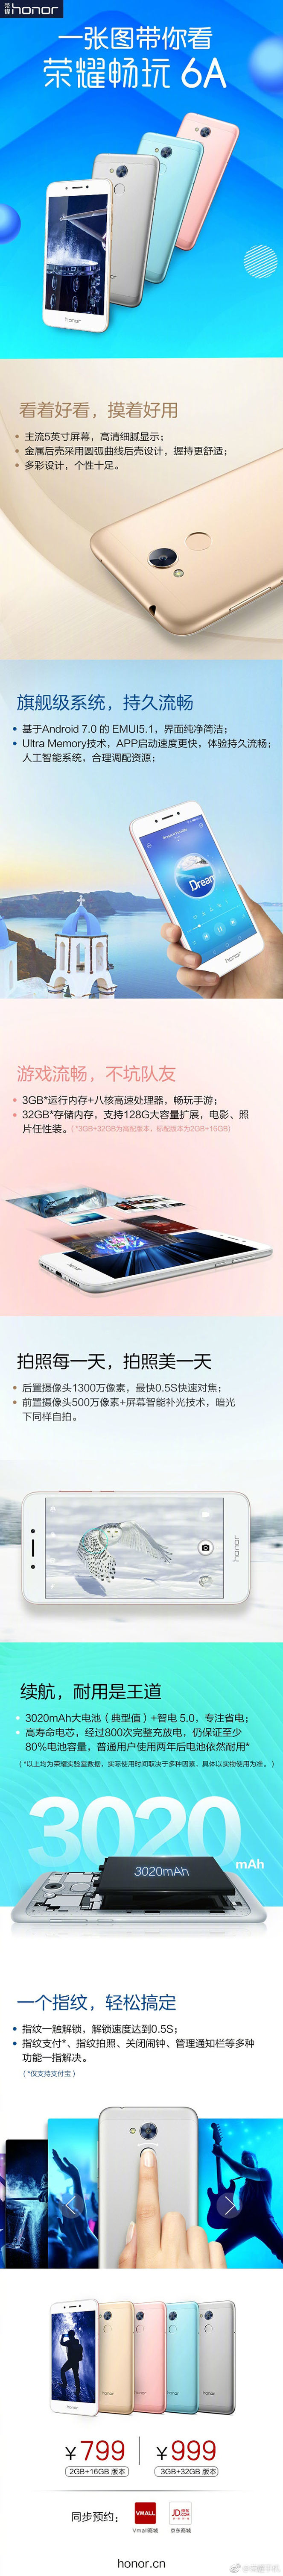 荣耀畅玩6A公布：五颜六色金属材料外壳、Android 7.0系统软件，卖799元起